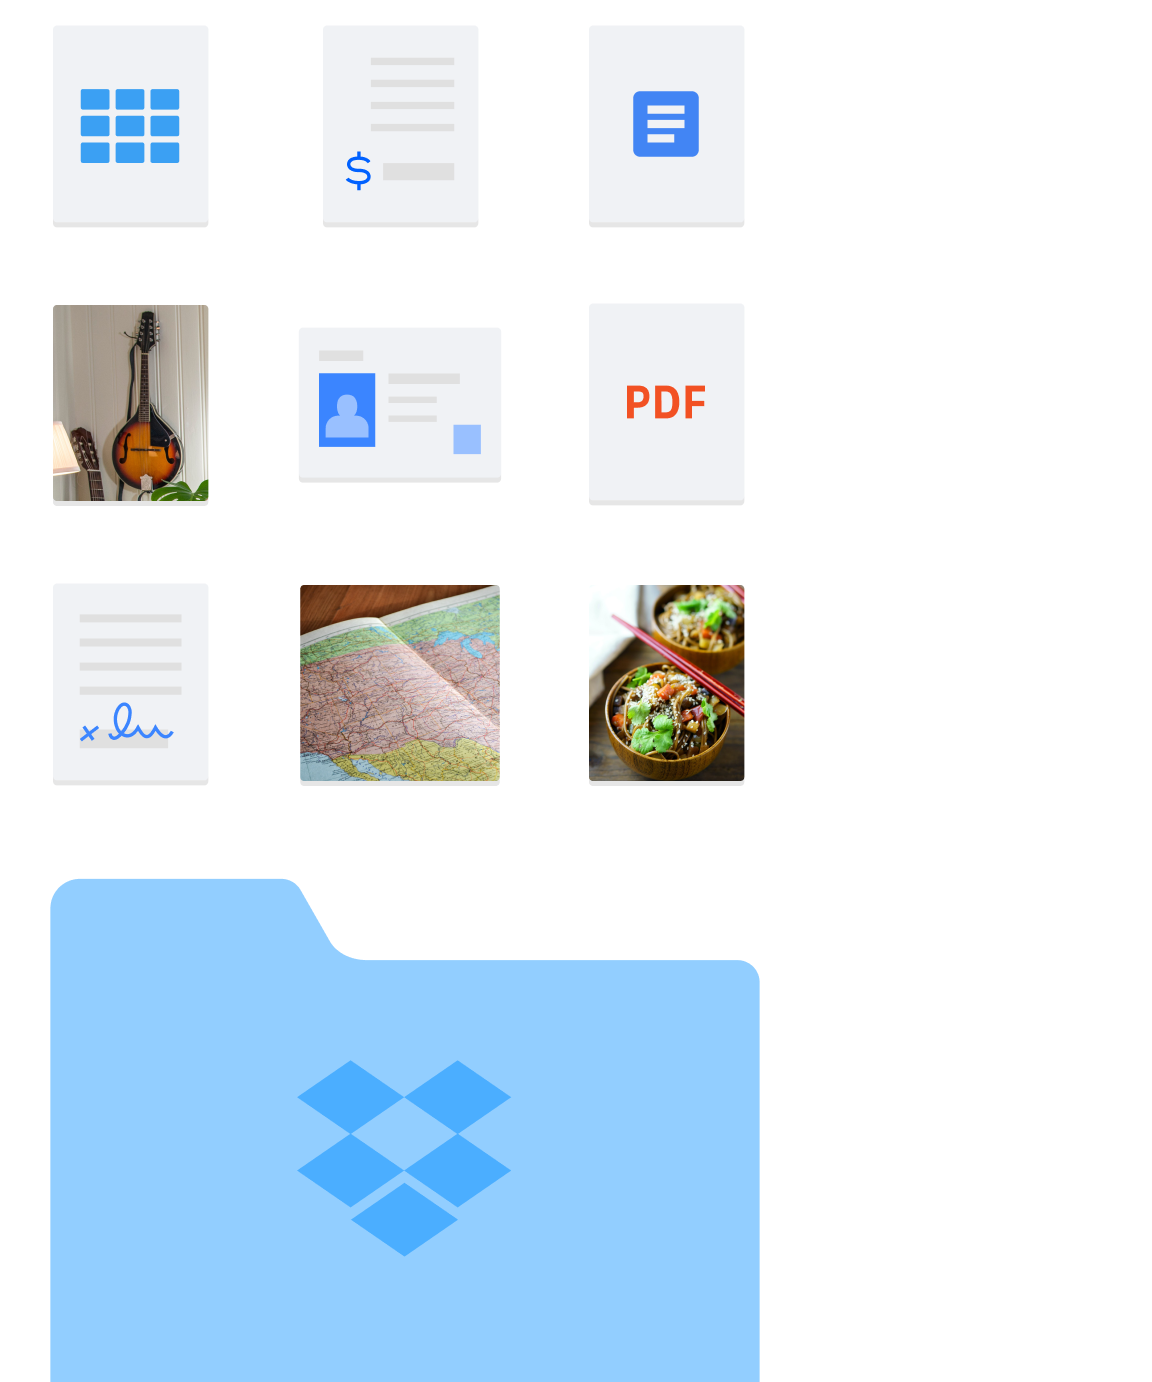 Billede af forskellige mappe- og filtyper, såsom billeder og dokumenter, indeholdt i Dropbox.